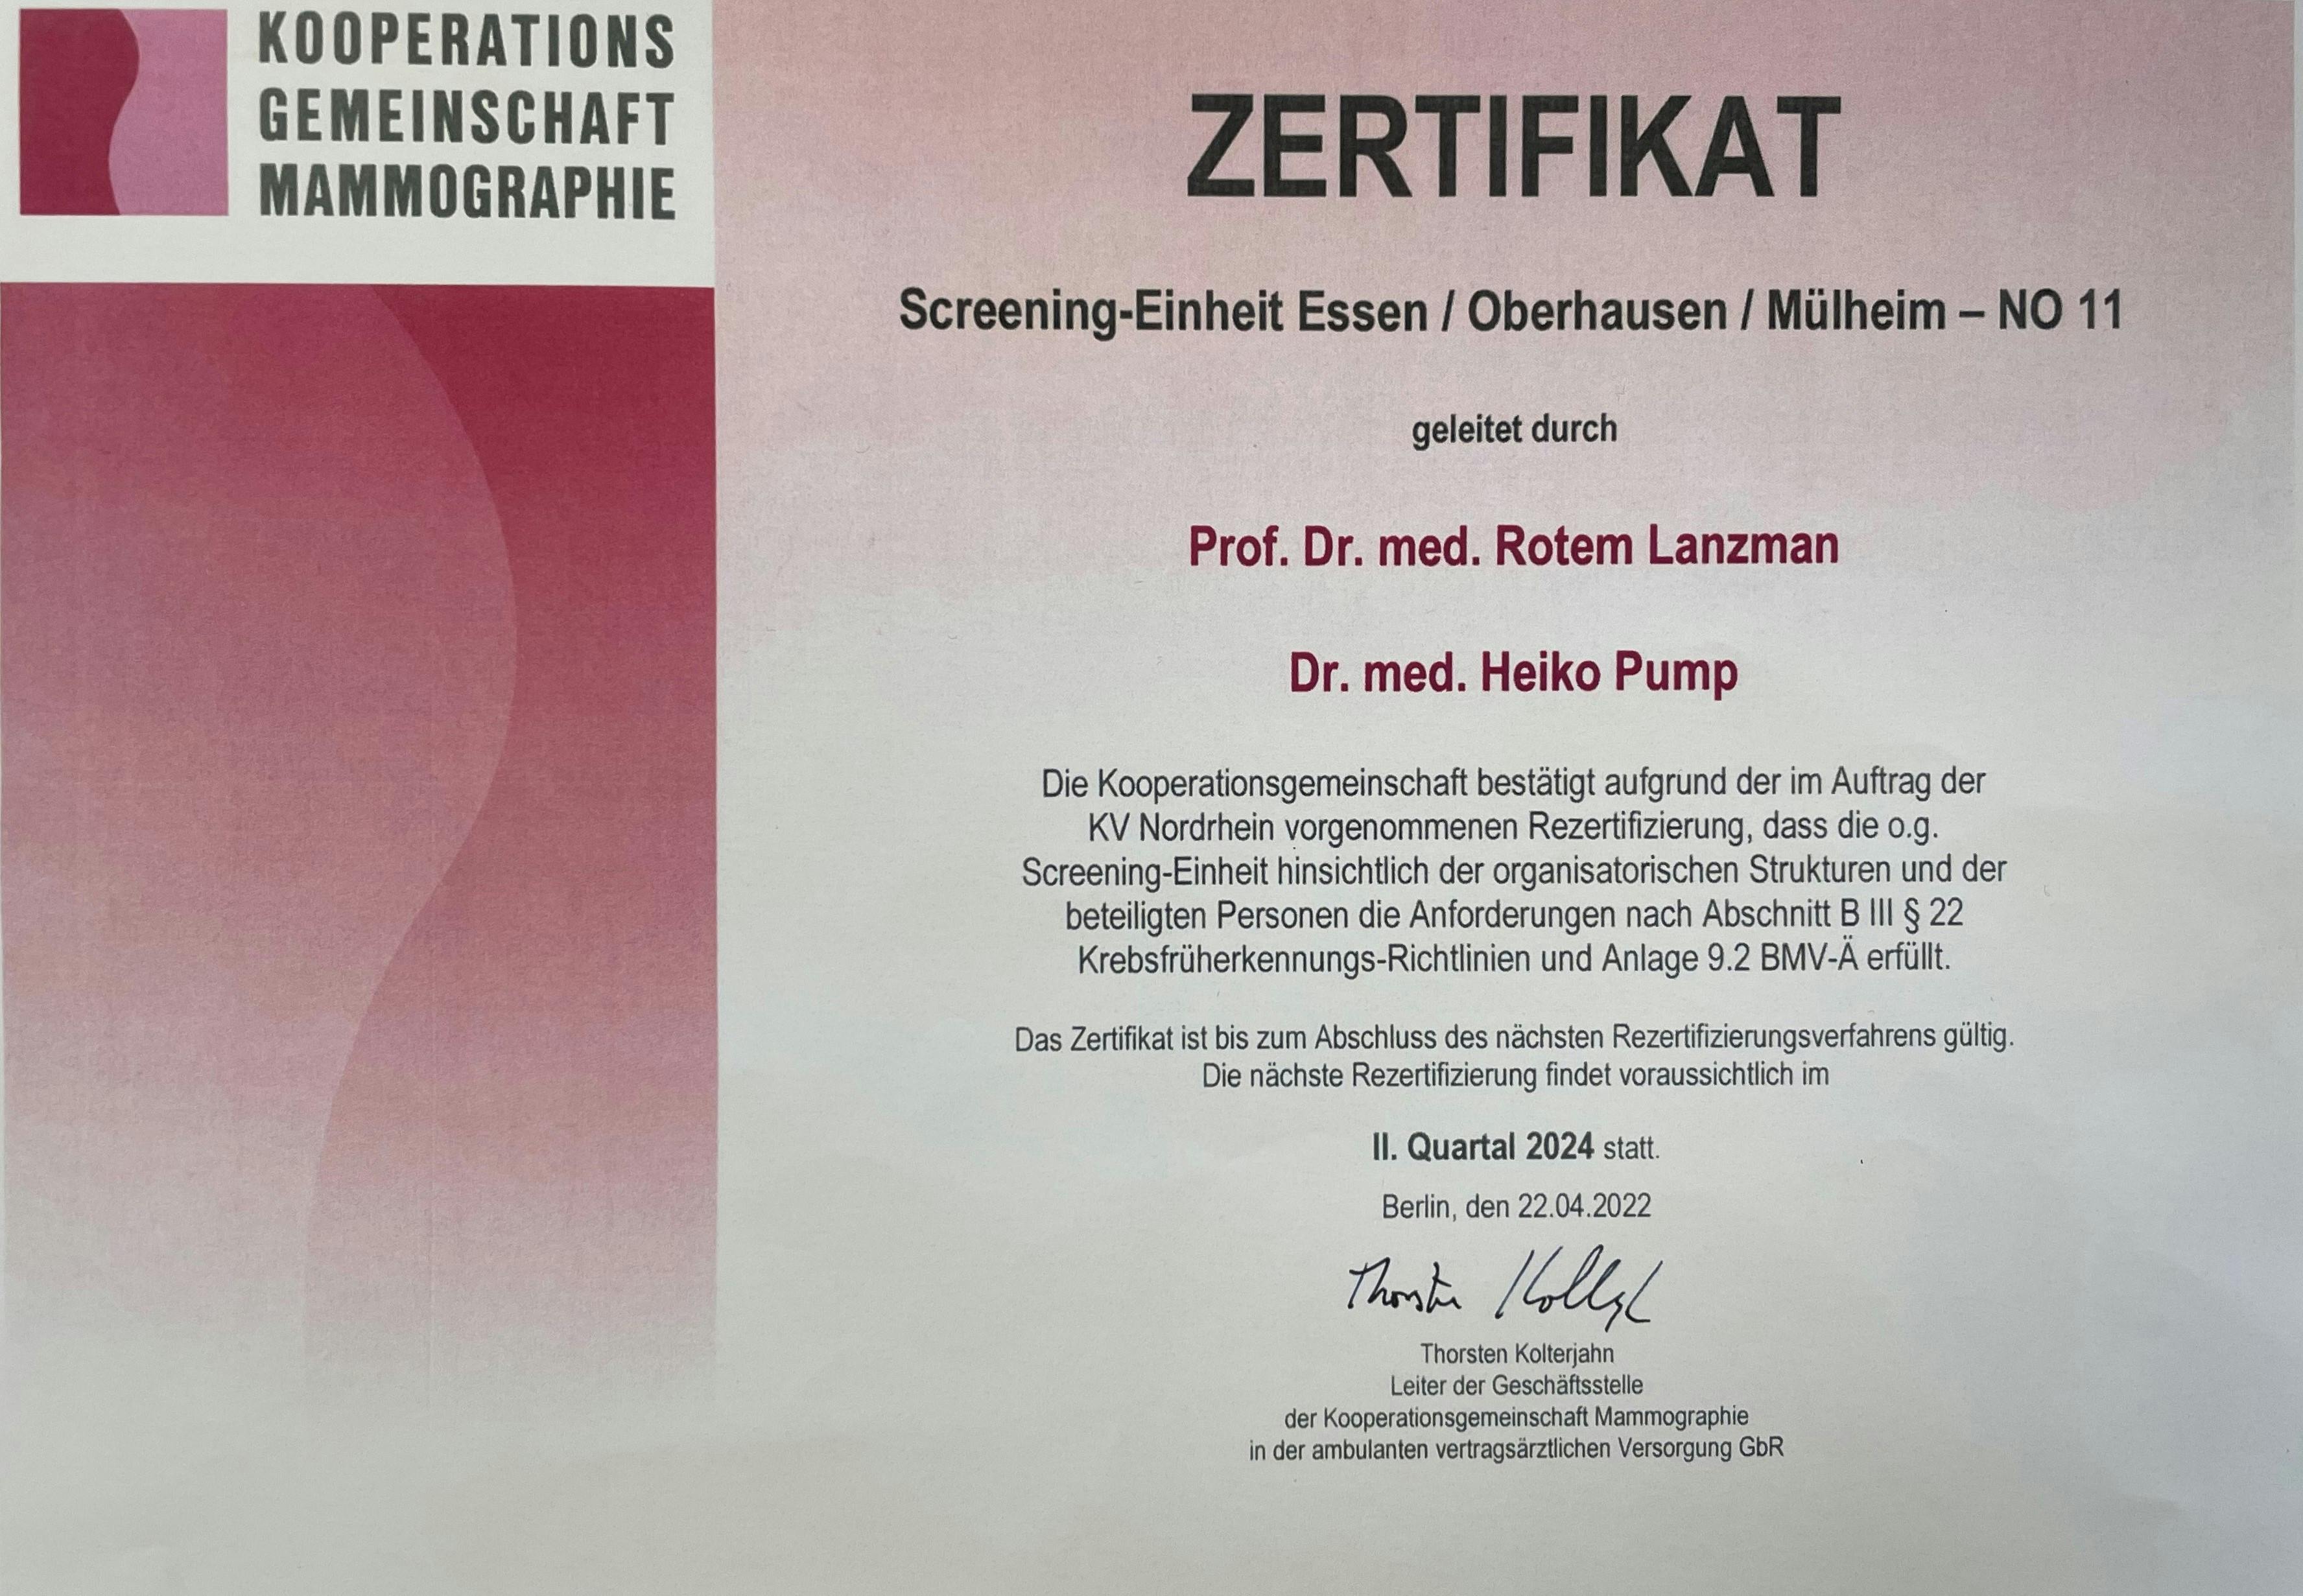 Zertifikat der Kooperationsgemeinschaft Mammographie für die Screening-Einheit Essen/ Oberhausen/ Mülheim geleitet durch Dr. med. Heiko Pump und Prof. Dr. med. Rotem Lanzman